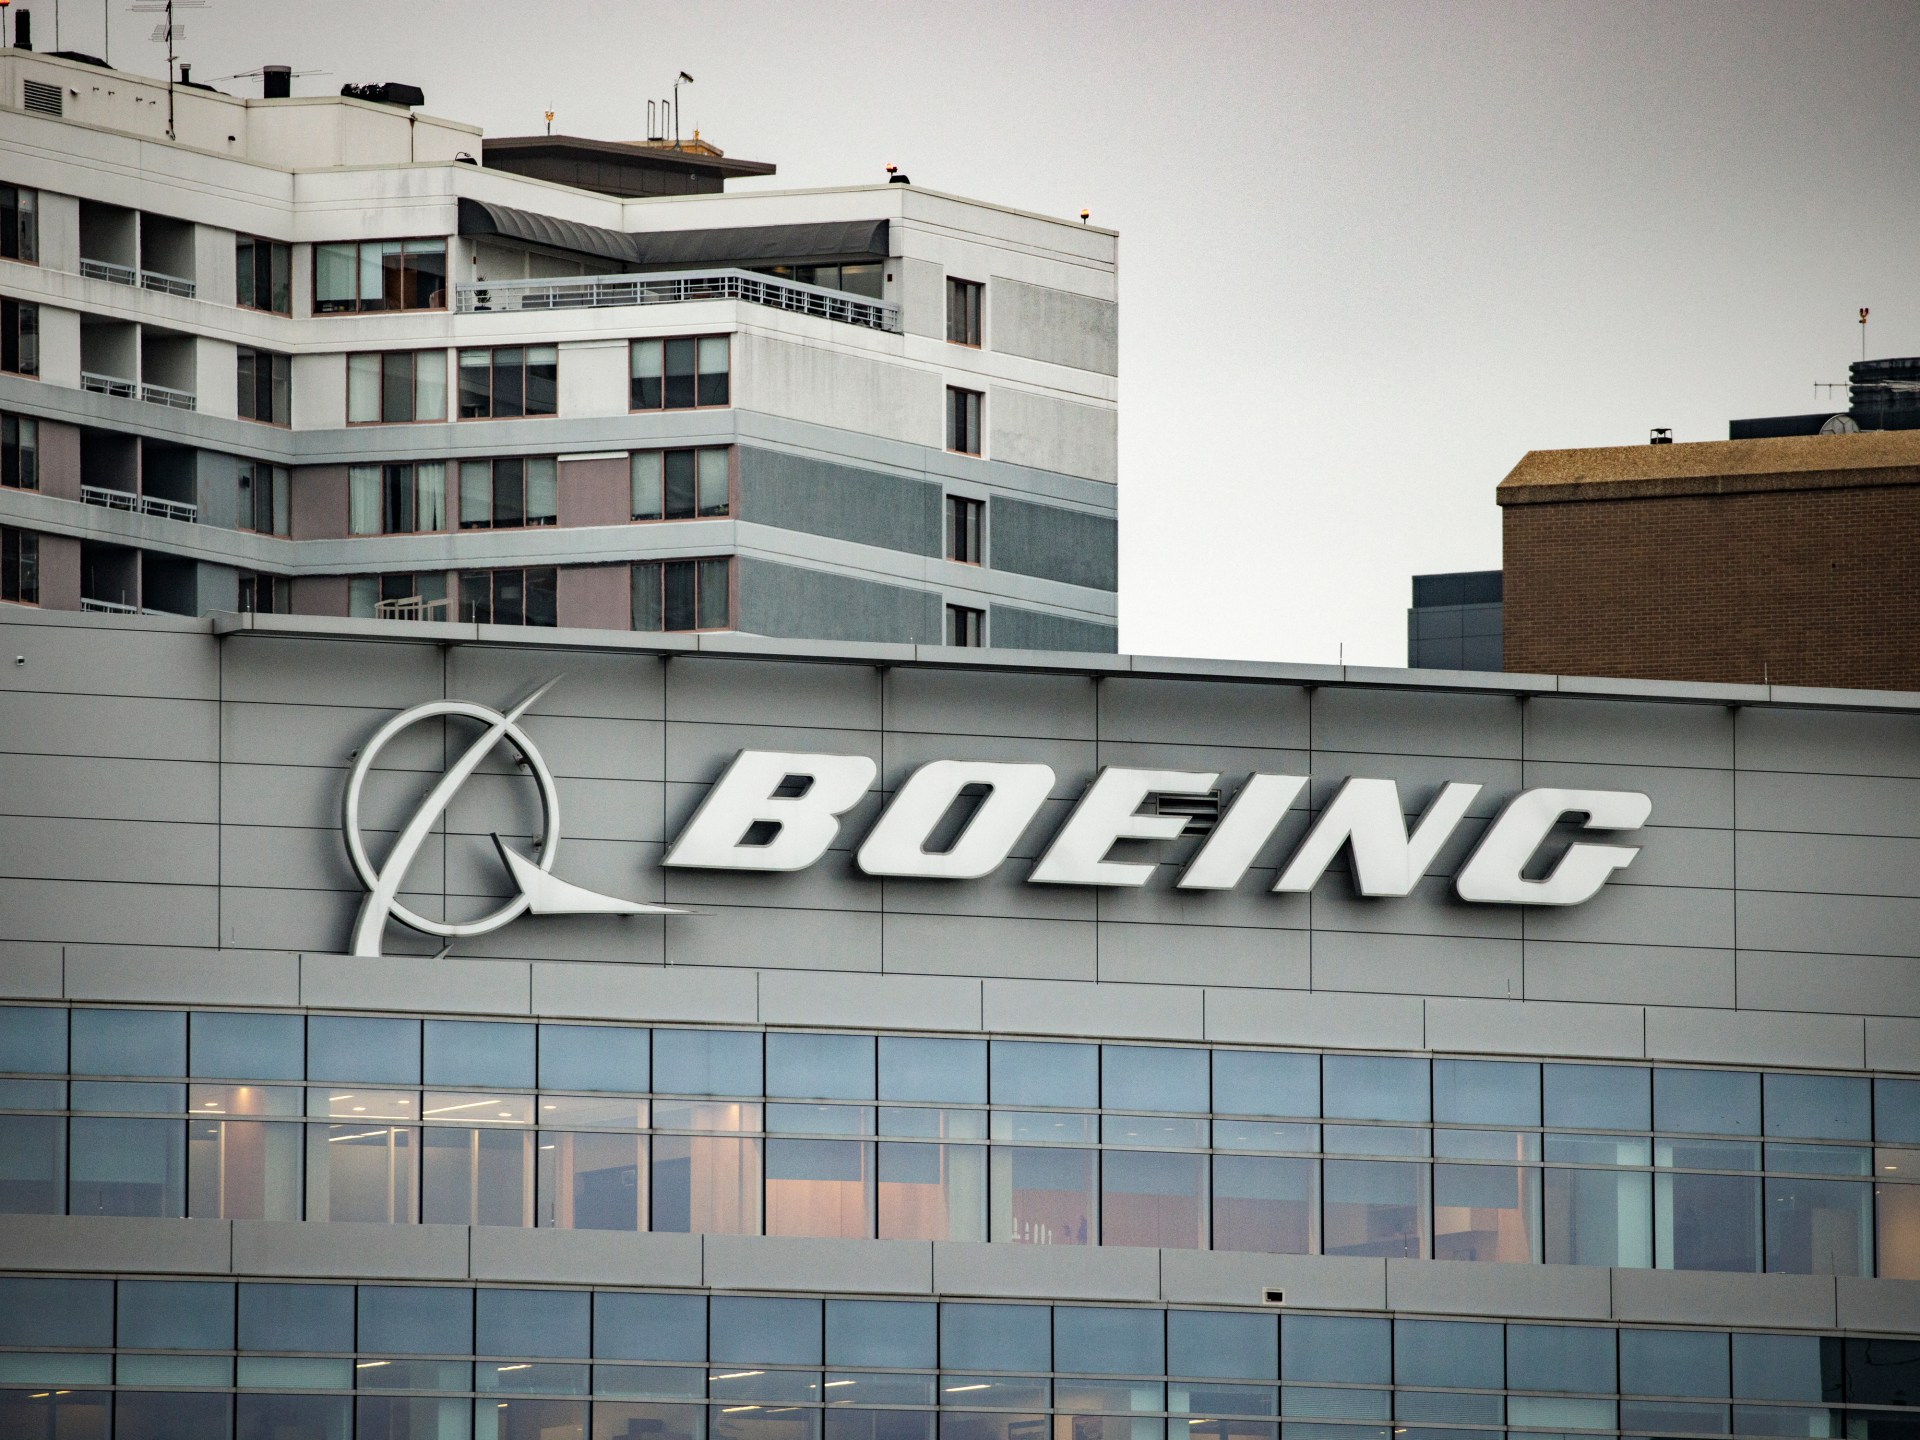 Boeing whistleblower John Barnett found dead